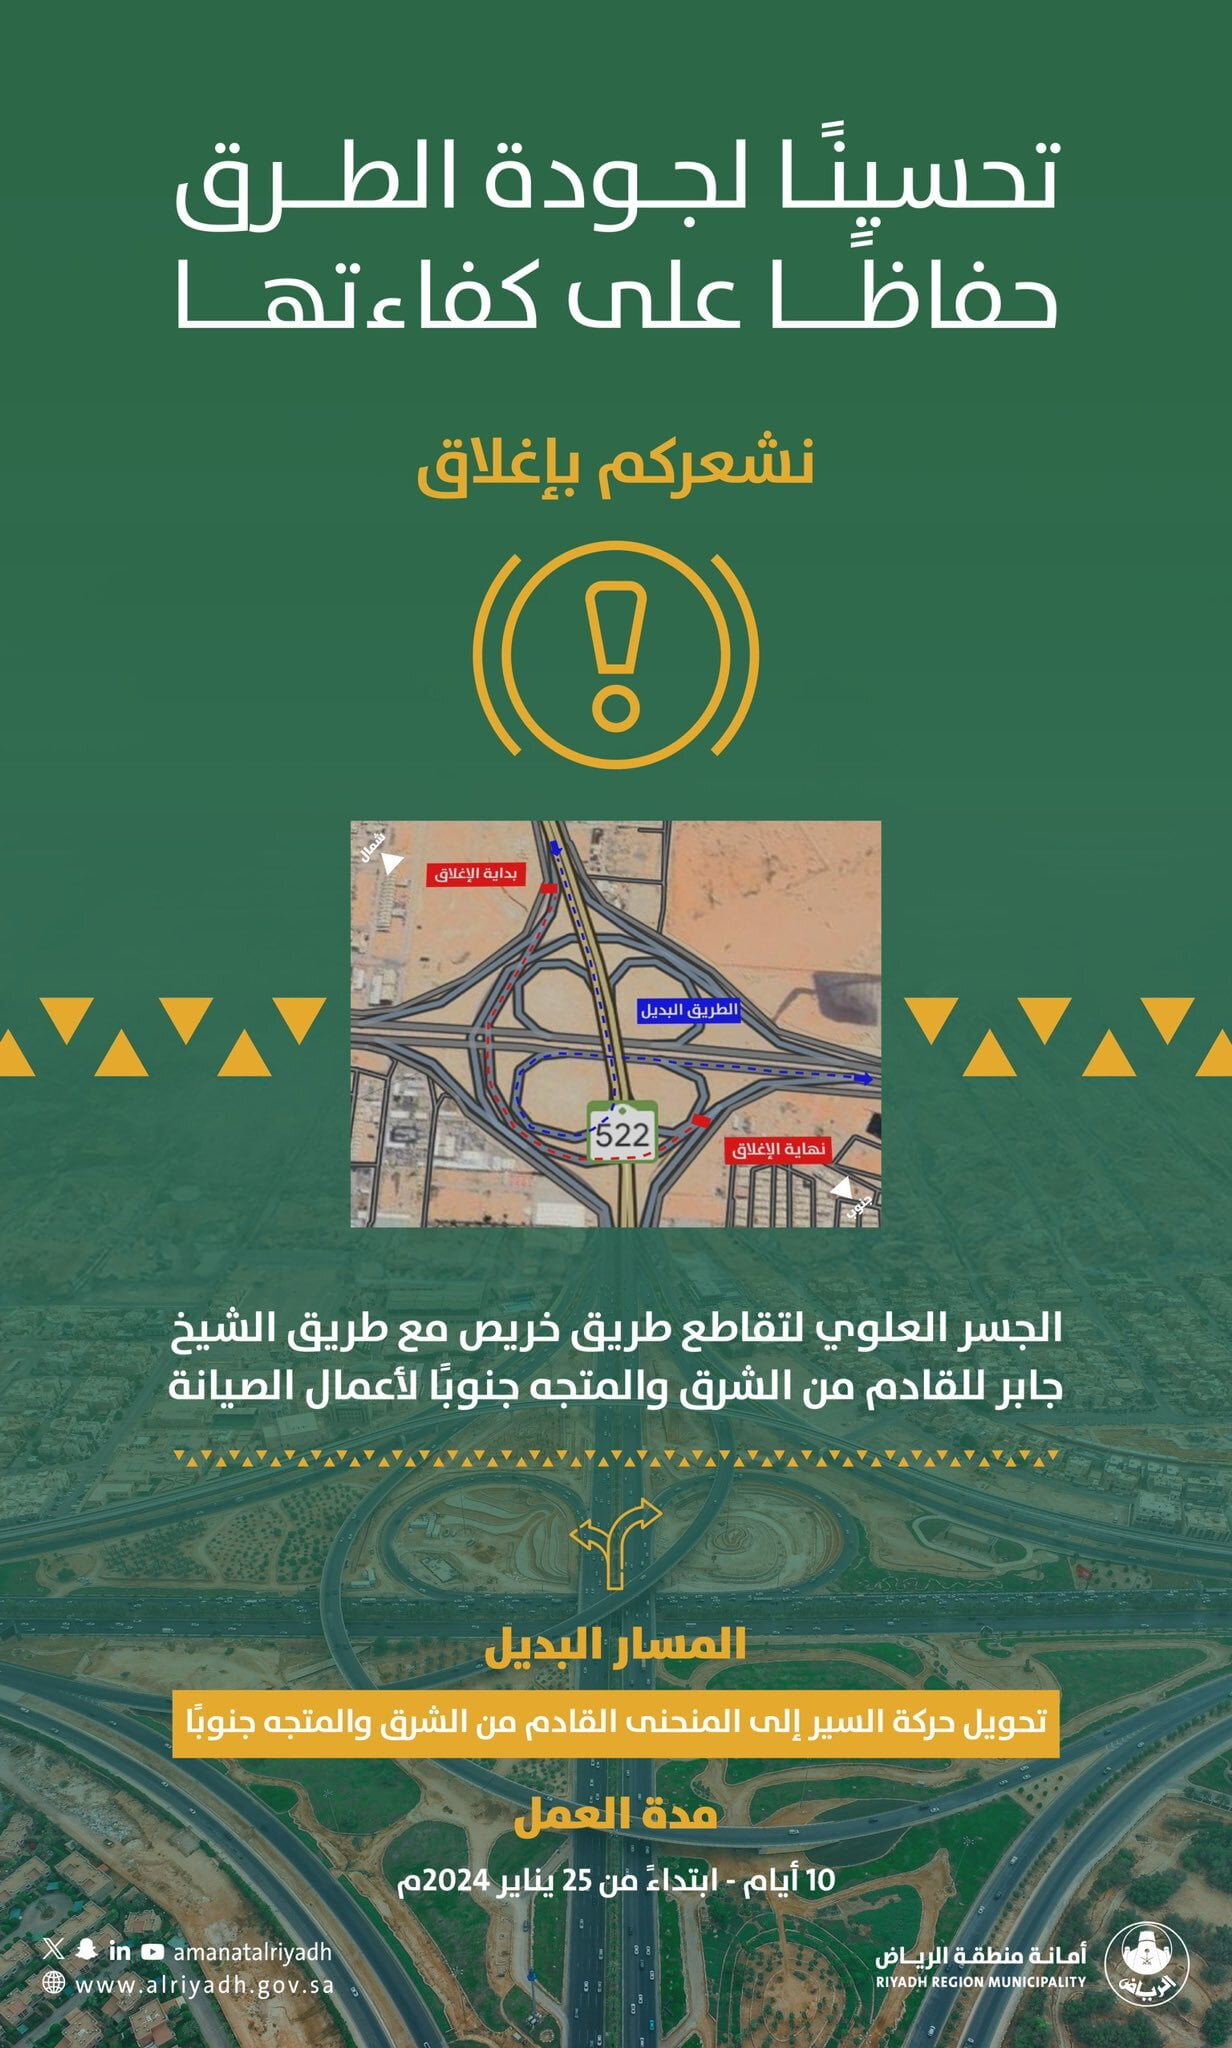 "أمانة الرياض": إغلاق الجسر العلوي تقاطع طريقي "خريص" مع "الشيخ جابر" 10 أيام 10